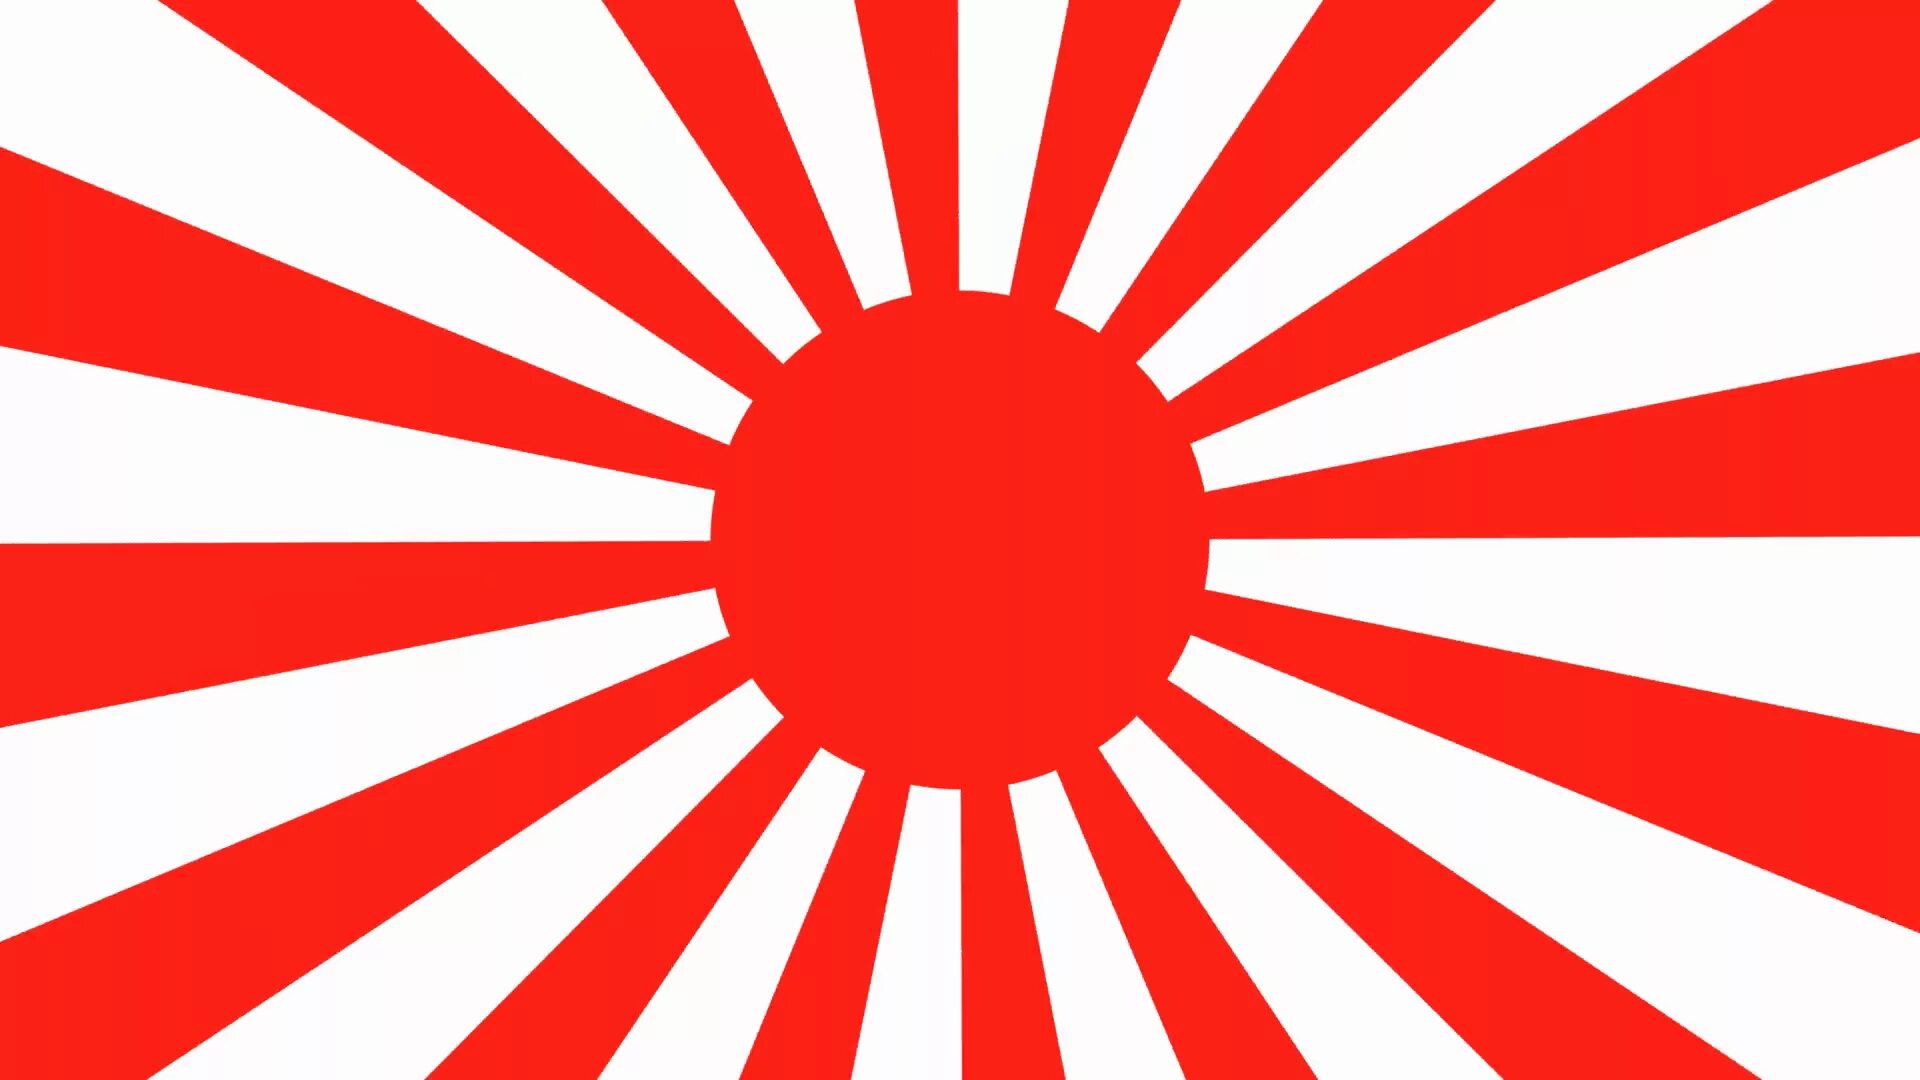 Флаг снизу вверх. Флаг японской империи. Флаг Японии 1941. Флаг имперской Японии. Флаг императорской Японии флаг восходящего солнца.